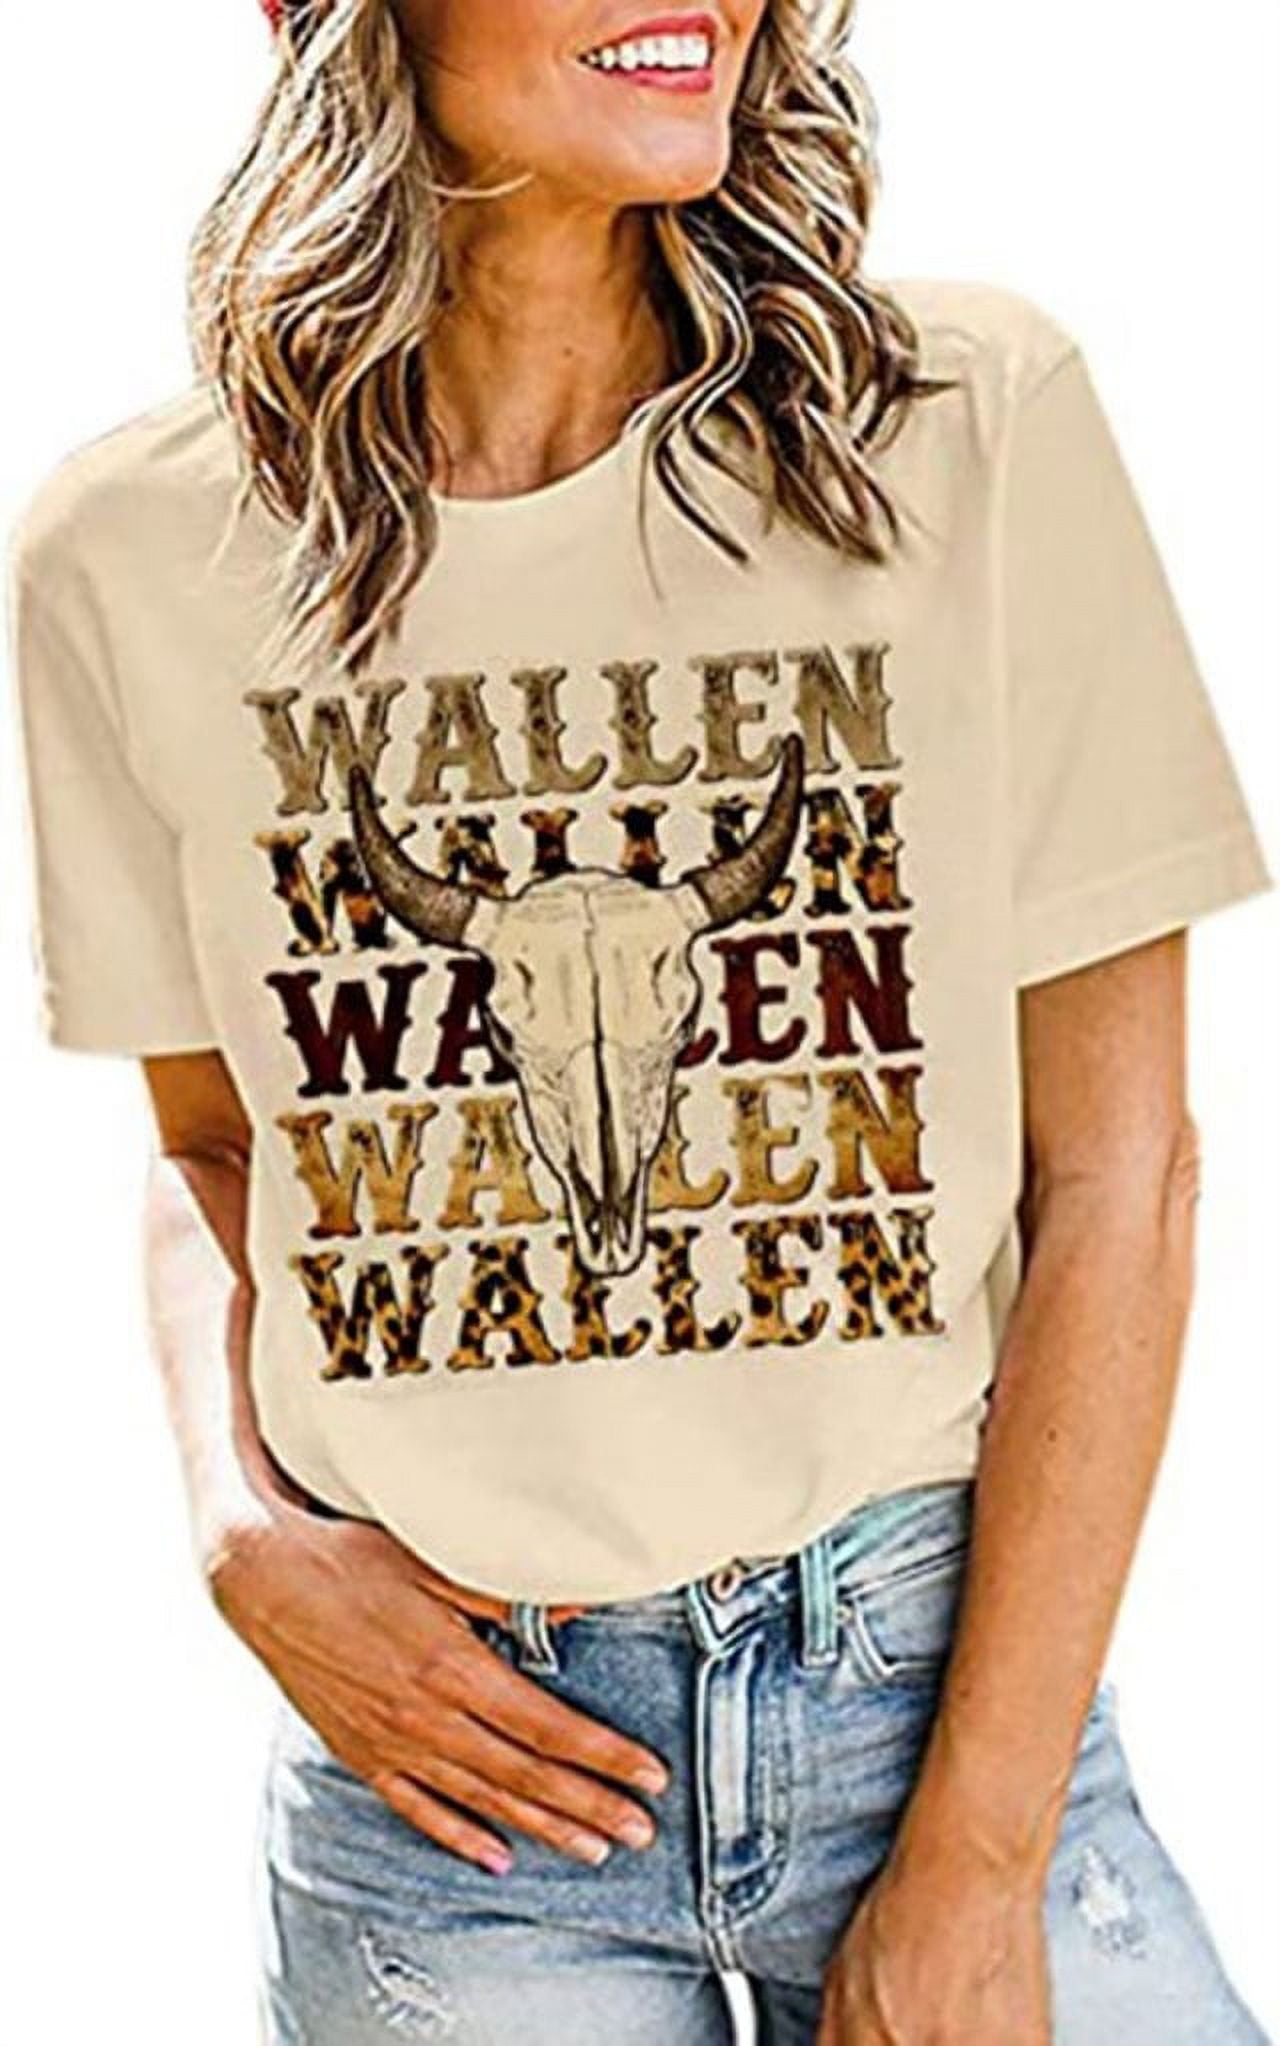 Wallen Shirt Women Funny Leopard Steer Skull Graphic Tee Top Country ...